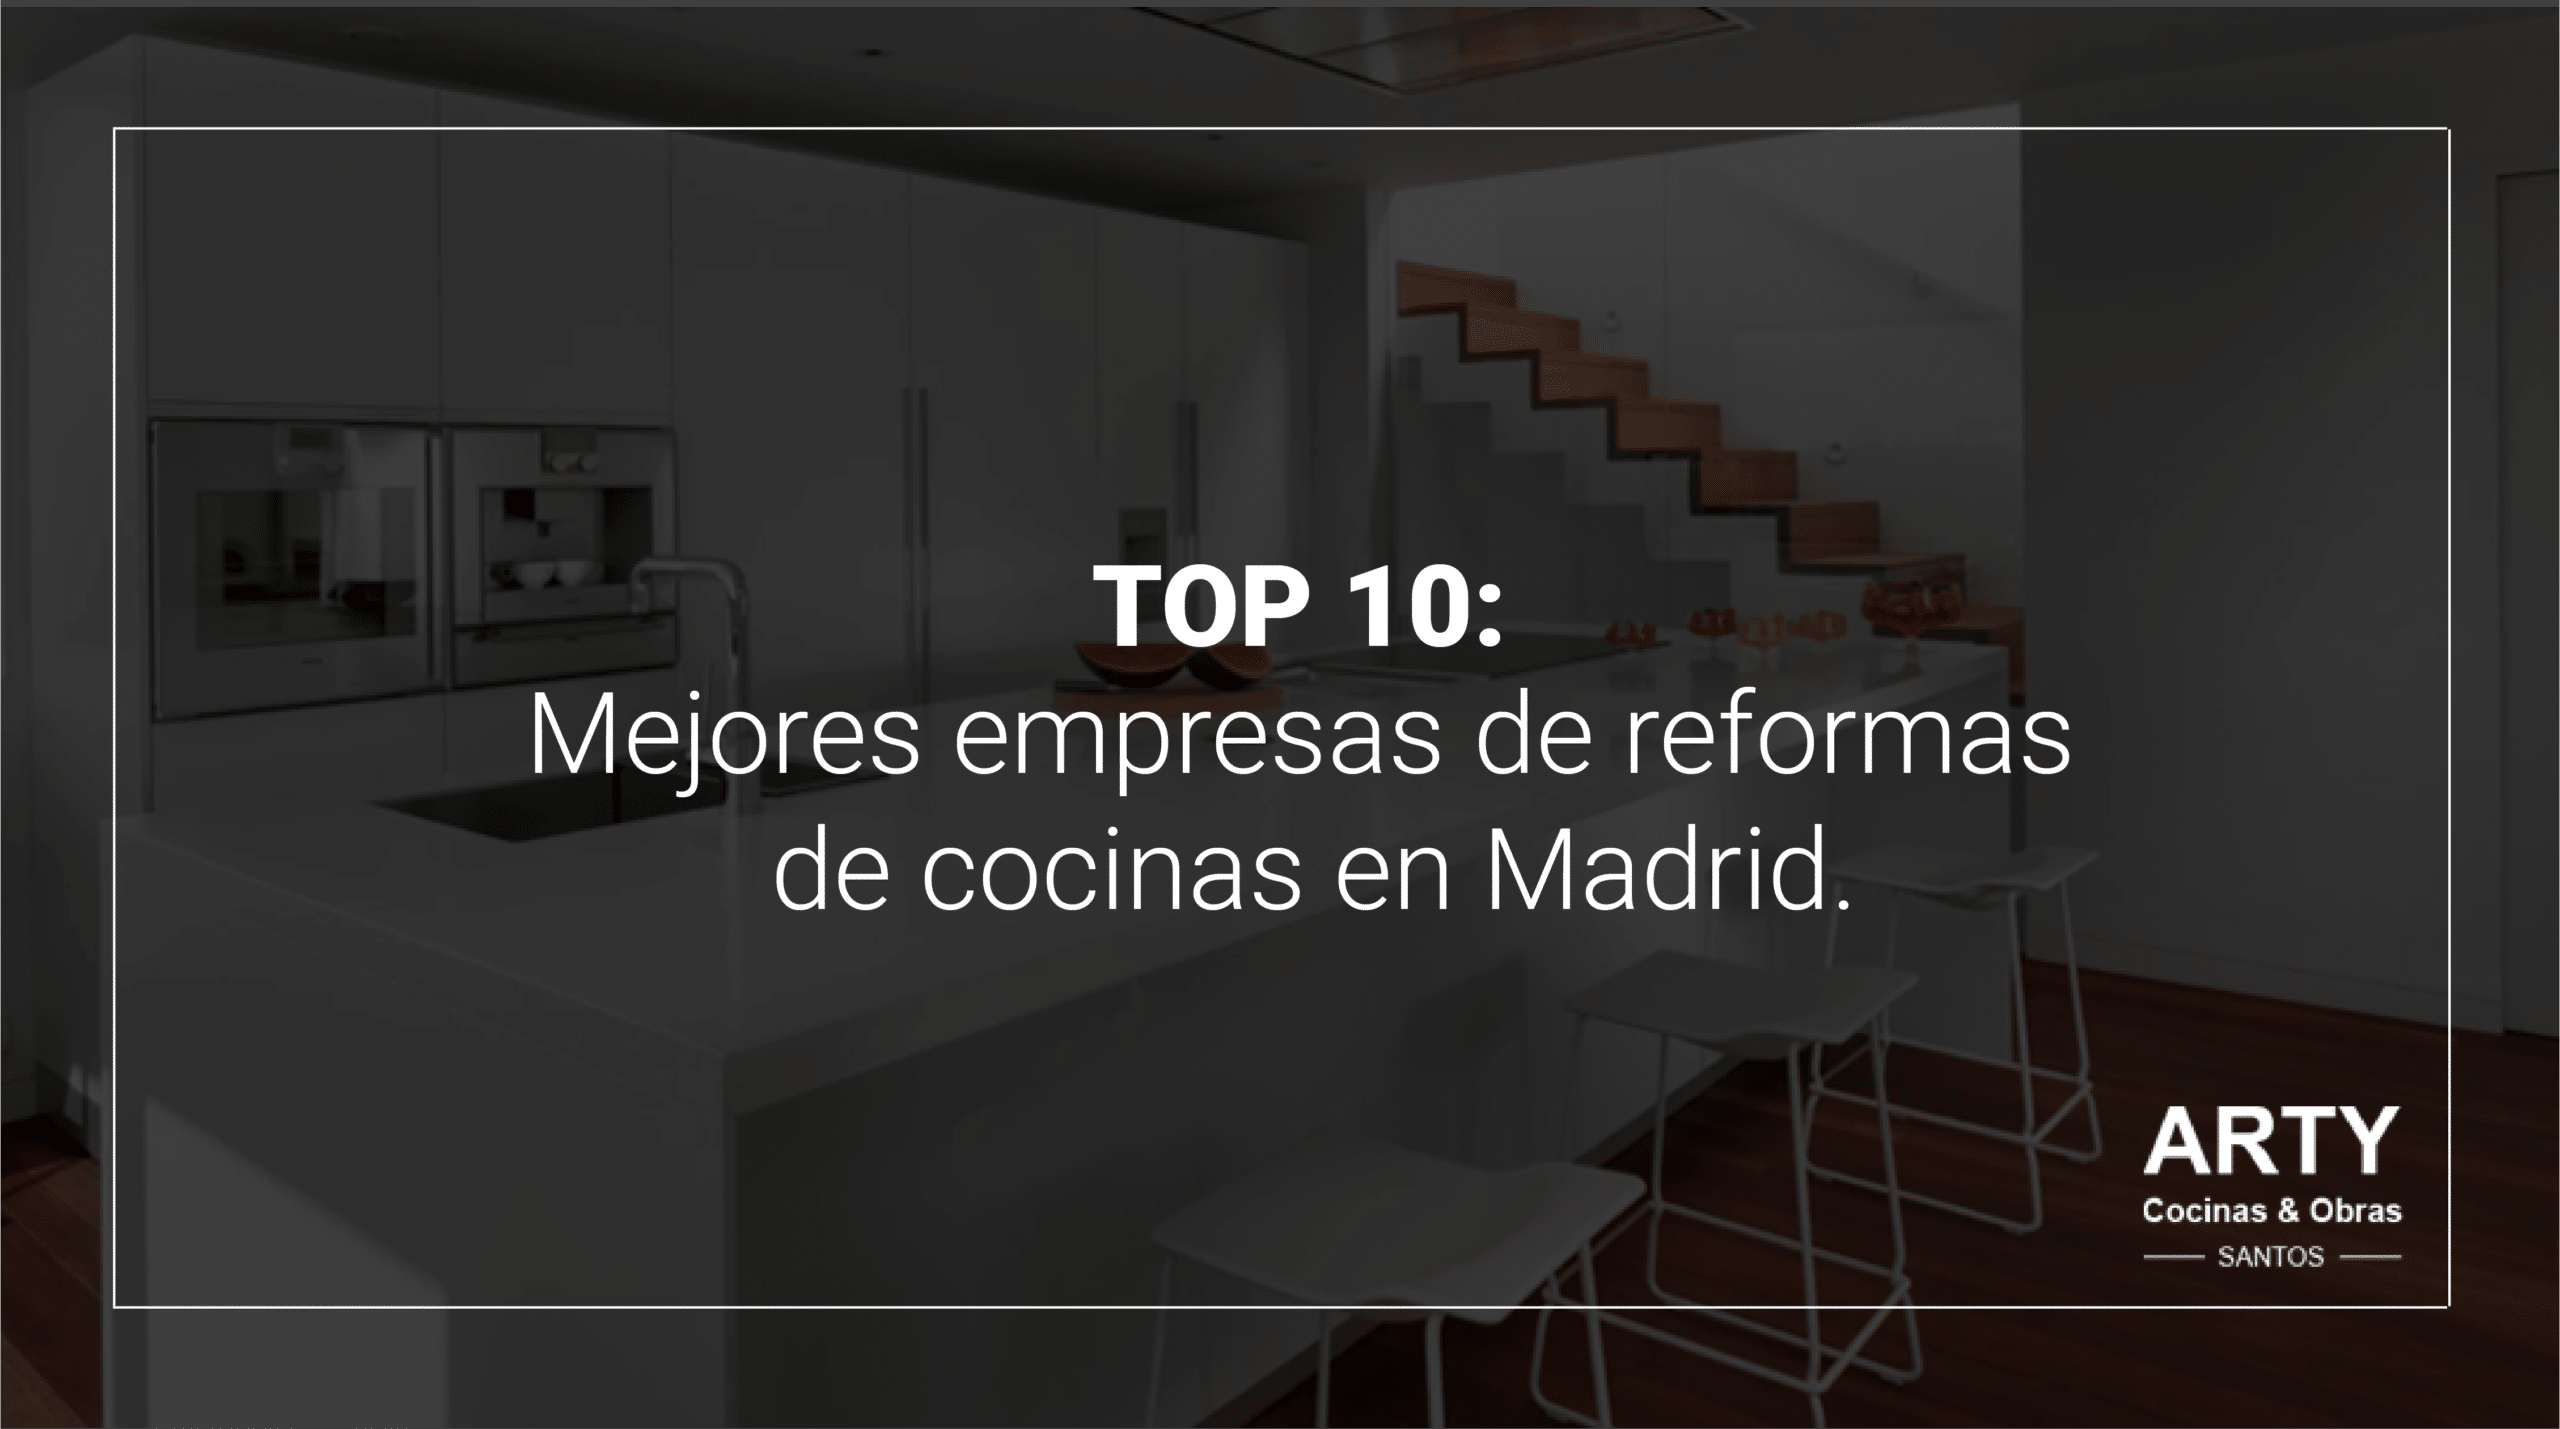 Top 10: Mejores empresas de reformas de cocinas en Madrid.